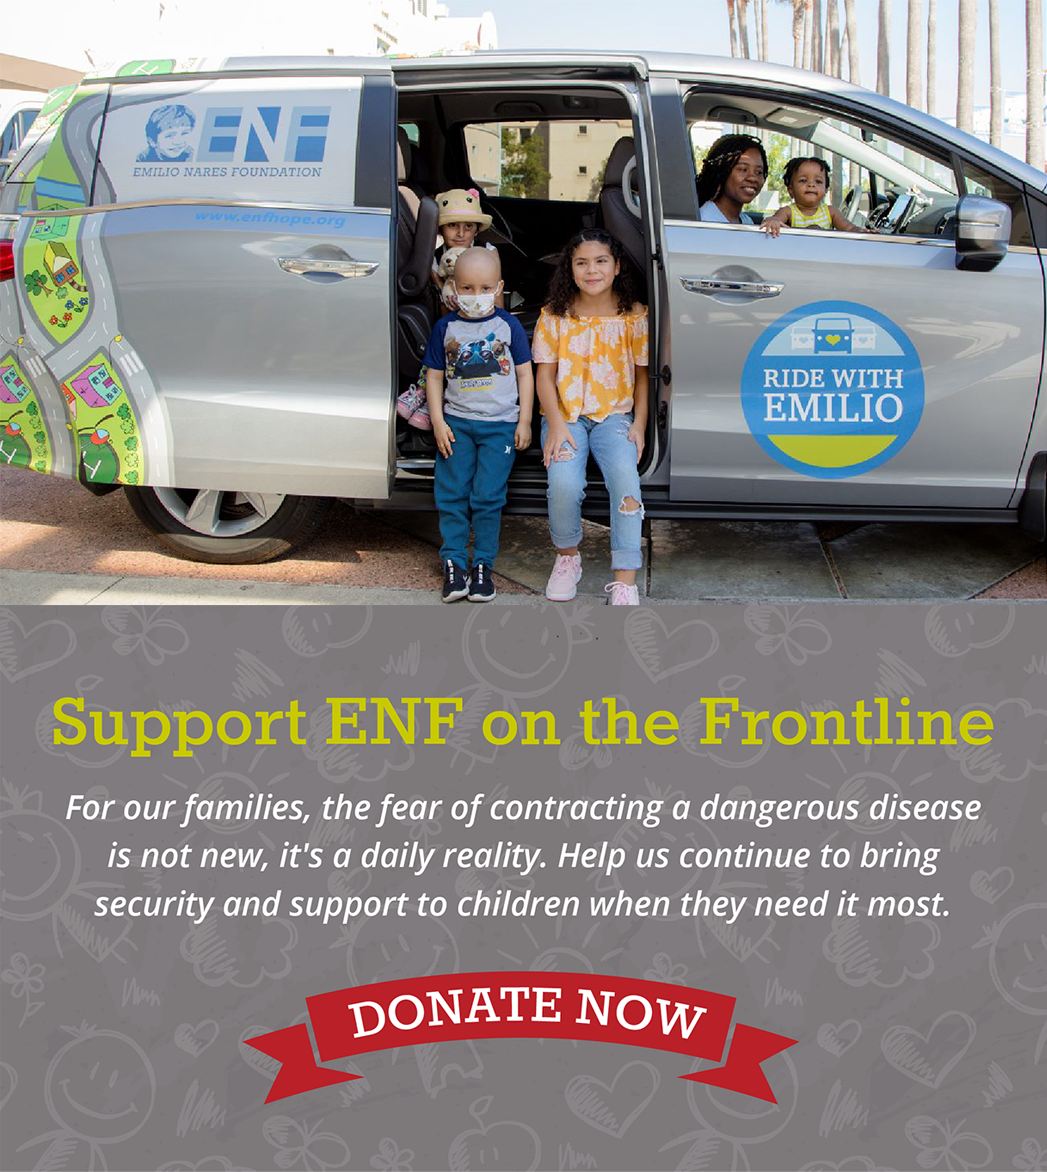 Support Emilio Nares Foundation